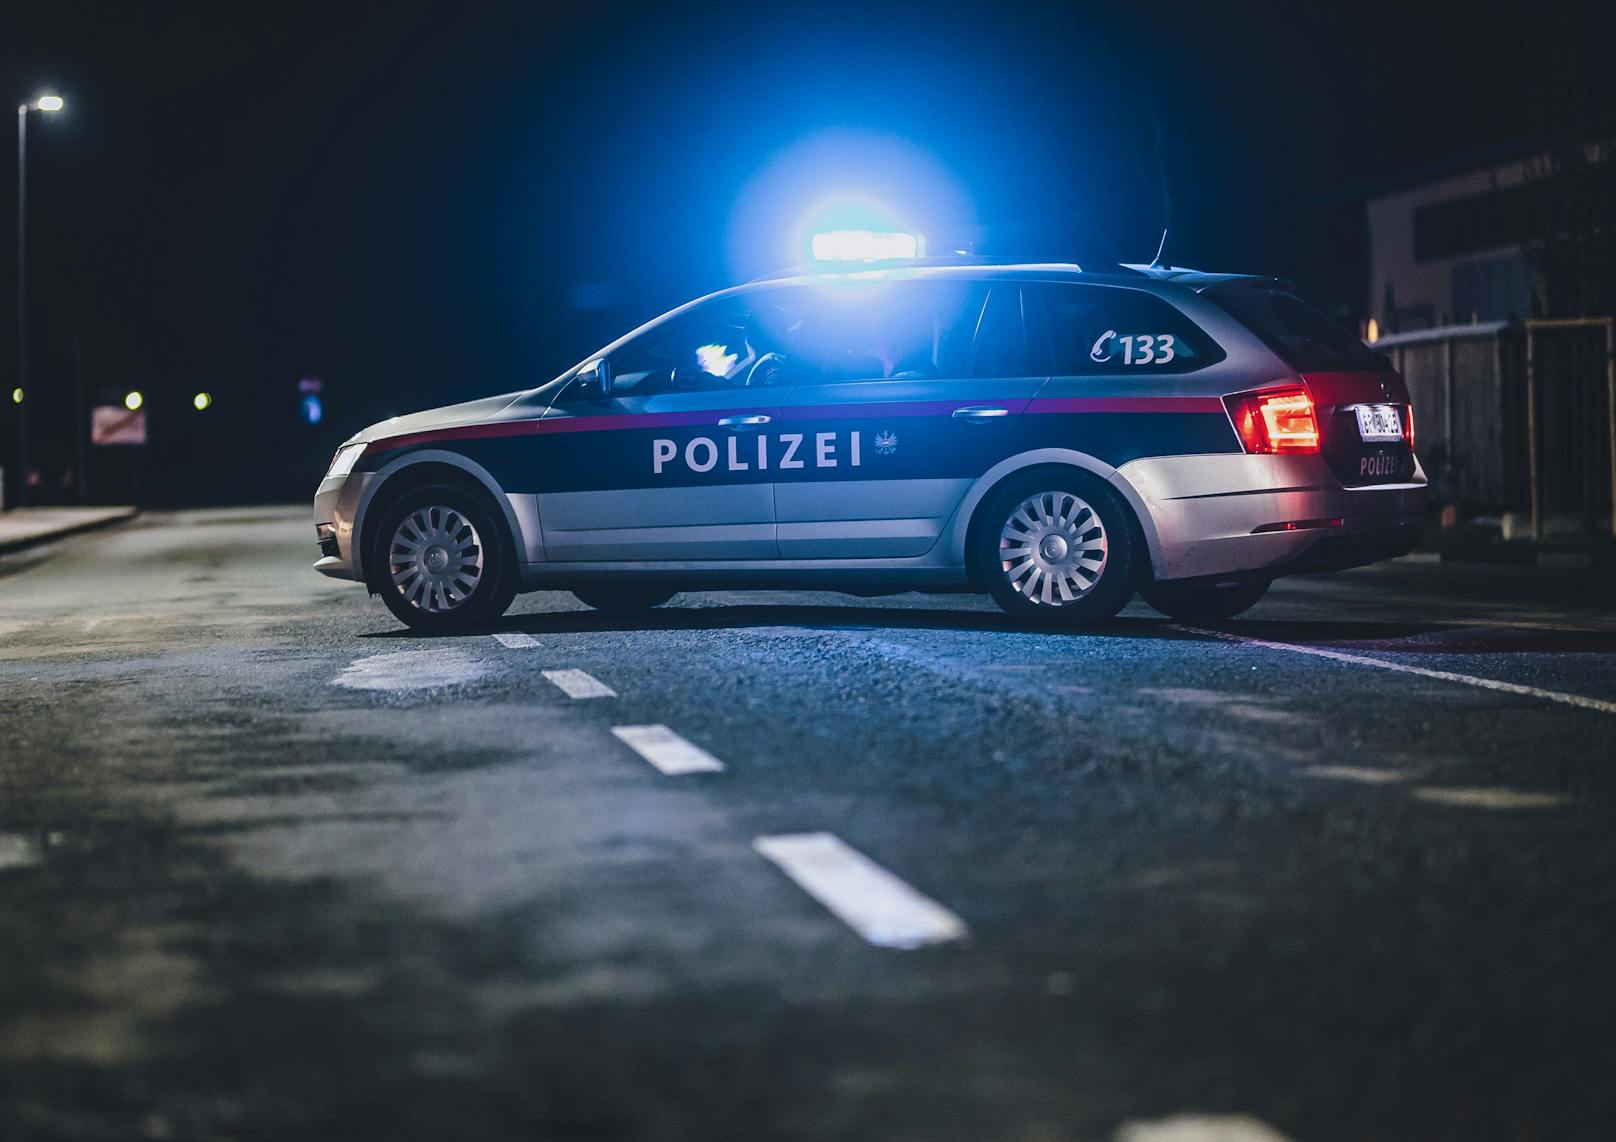 Betrunkener rast mit 1,72 Promille in Polizeiauto